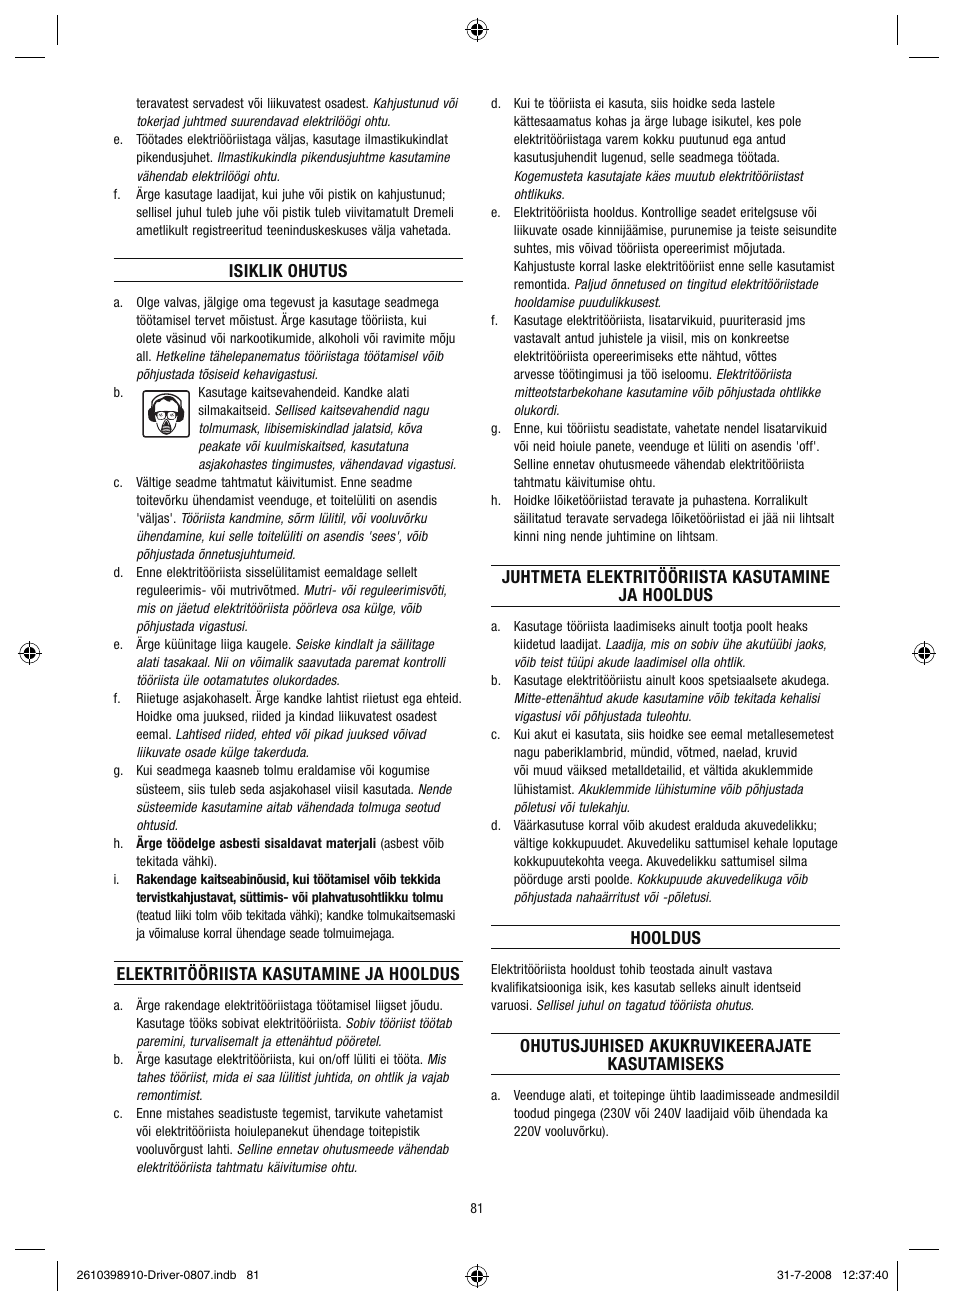 Isiklik ohutus, Elektritööriista kasutamine ja hooldus, Juhtmeta  elektritööriista kasutamine ja hooldus | Dremel Шуруповёрт DREMEL Driver  User Manual | Page 81 / 108 | Original mode